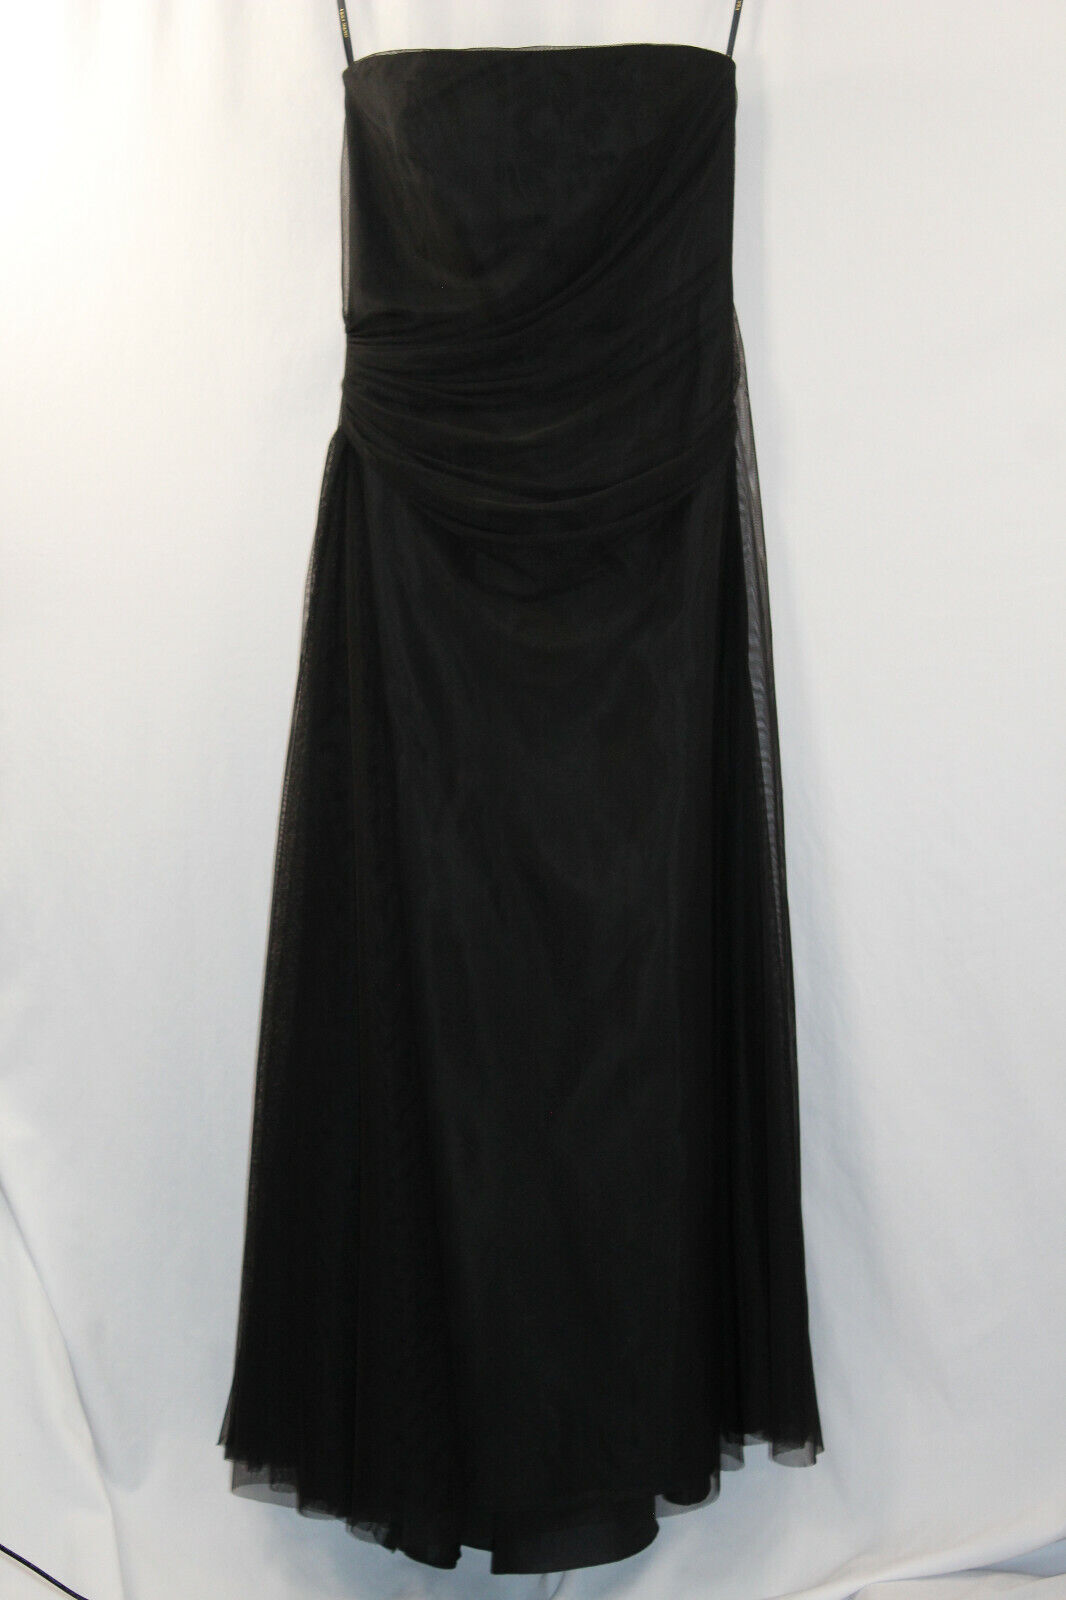 Vera Wang Black Strapless Evening Gown SZ 10 